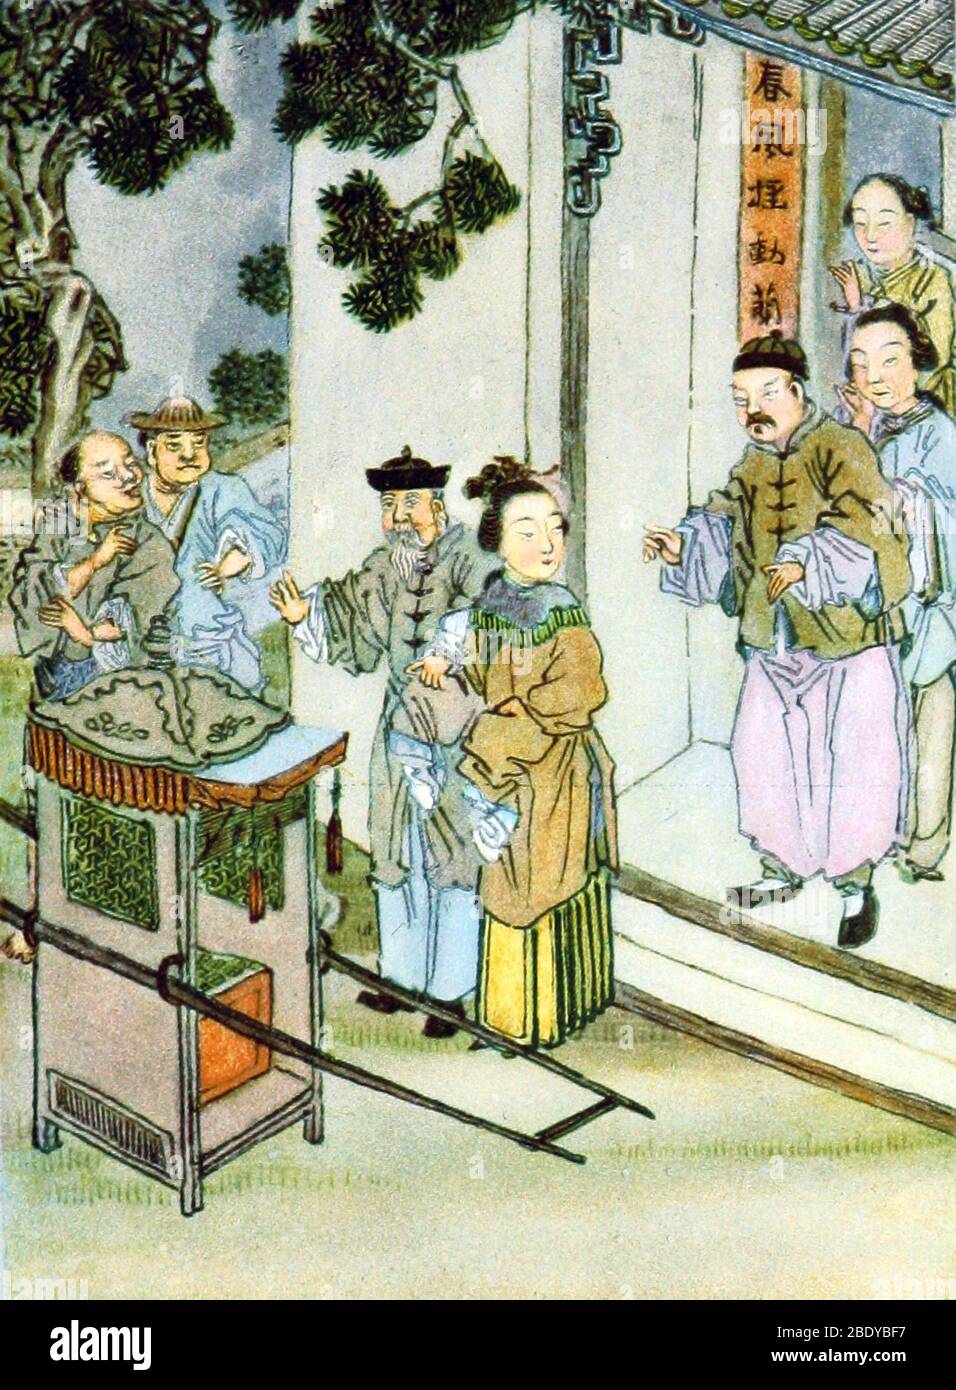 Départ de la Bride, Chine, XIXe siècle Banque D'Images